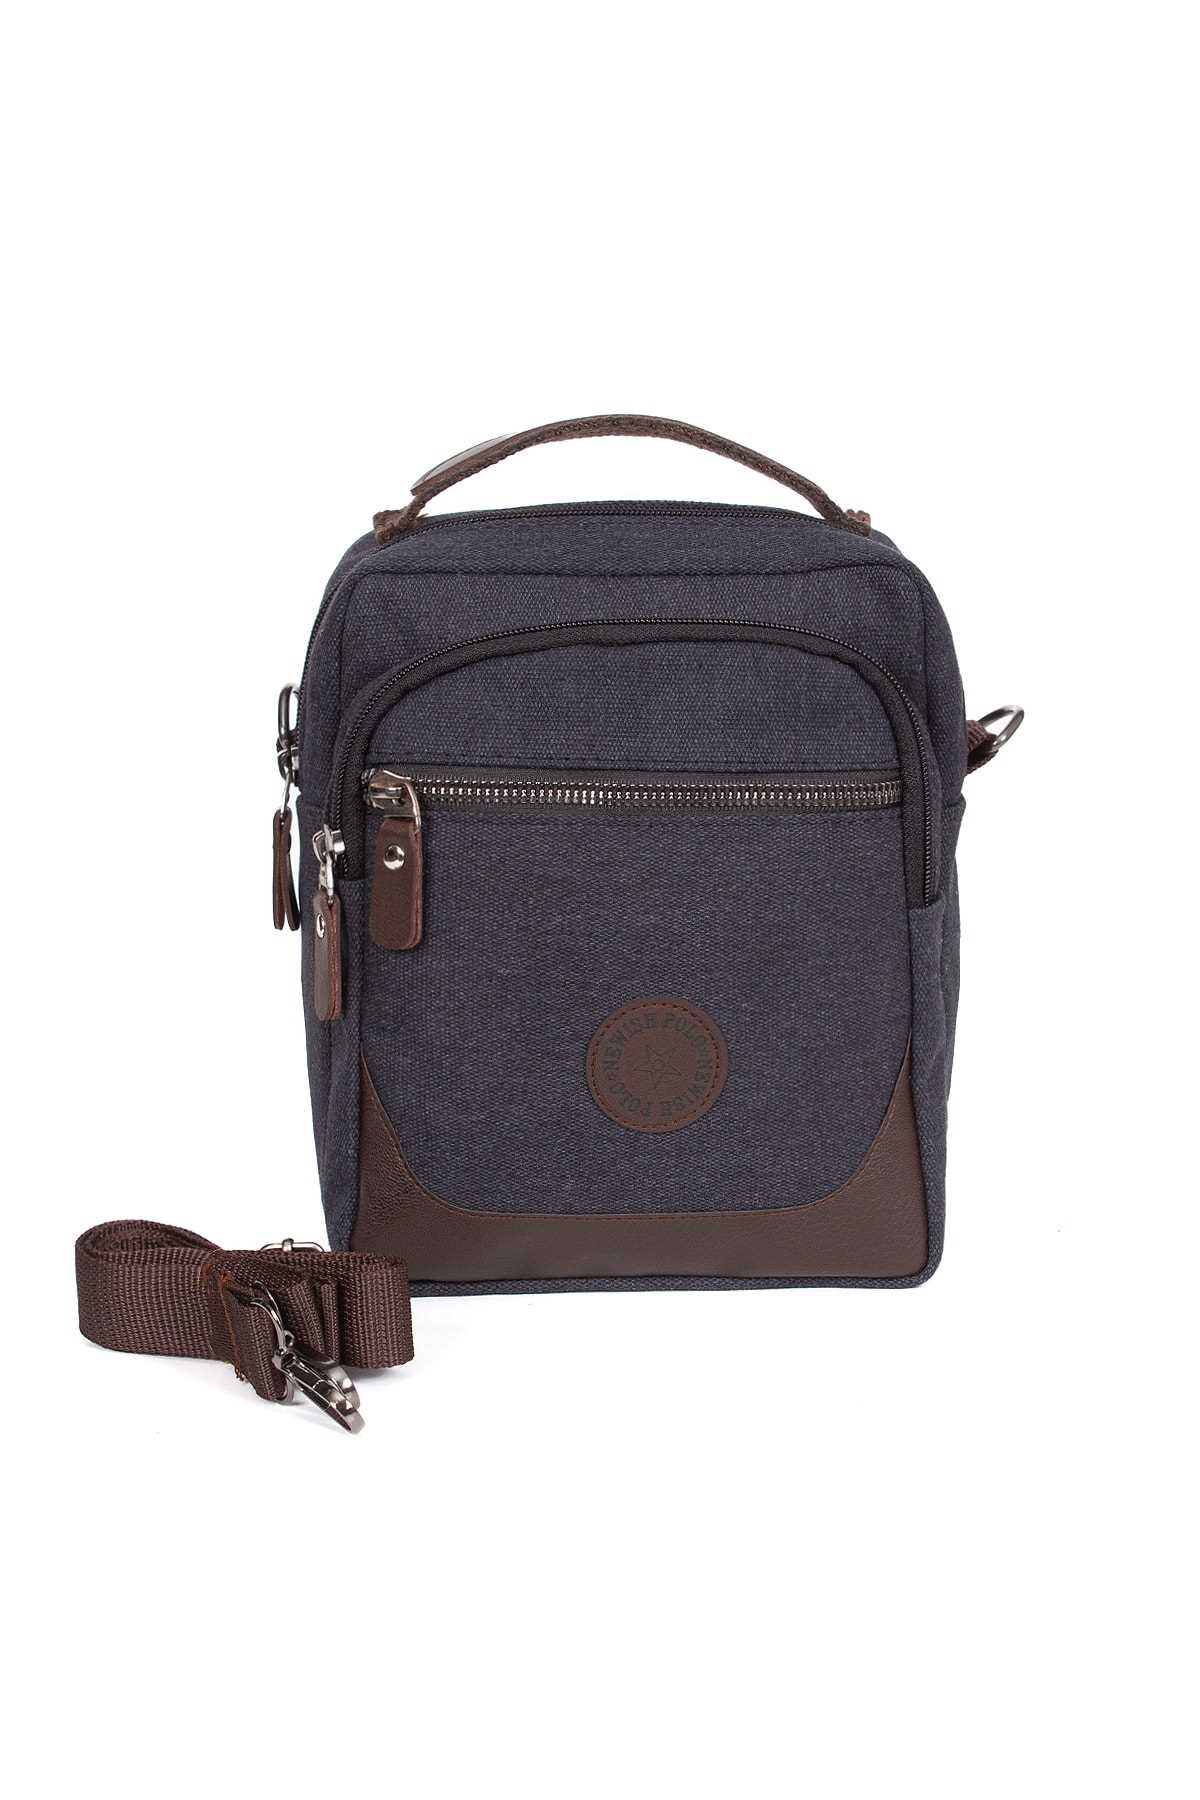 فروش کیف دستی جدید شیک Newish Polo رنگ نقره ای کد ty43391330